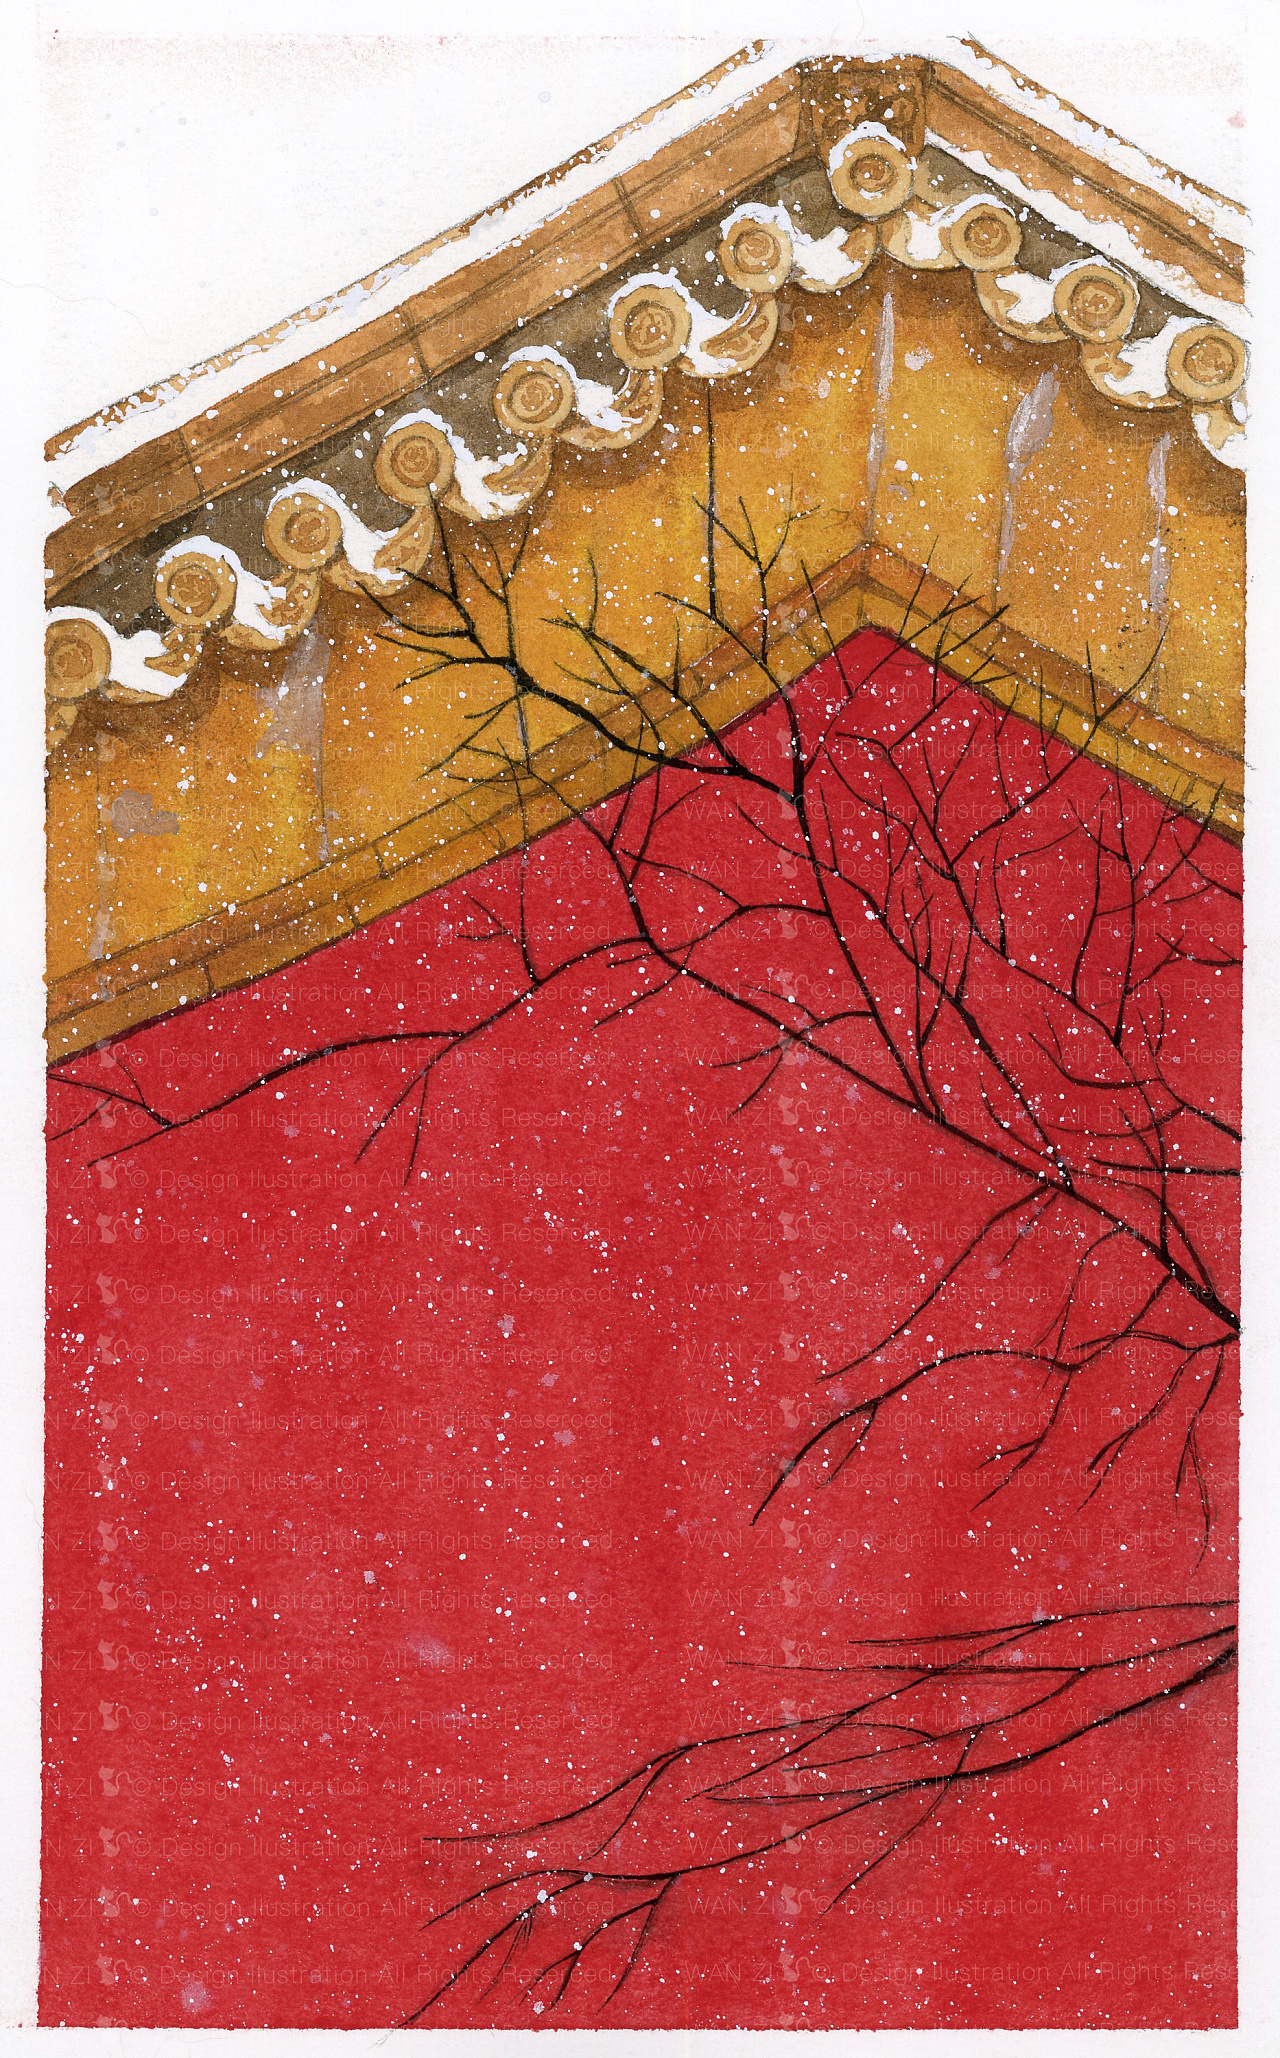 故宫红墙与雪,太美了.|插画|艺术插画|爱吃丸子的猫